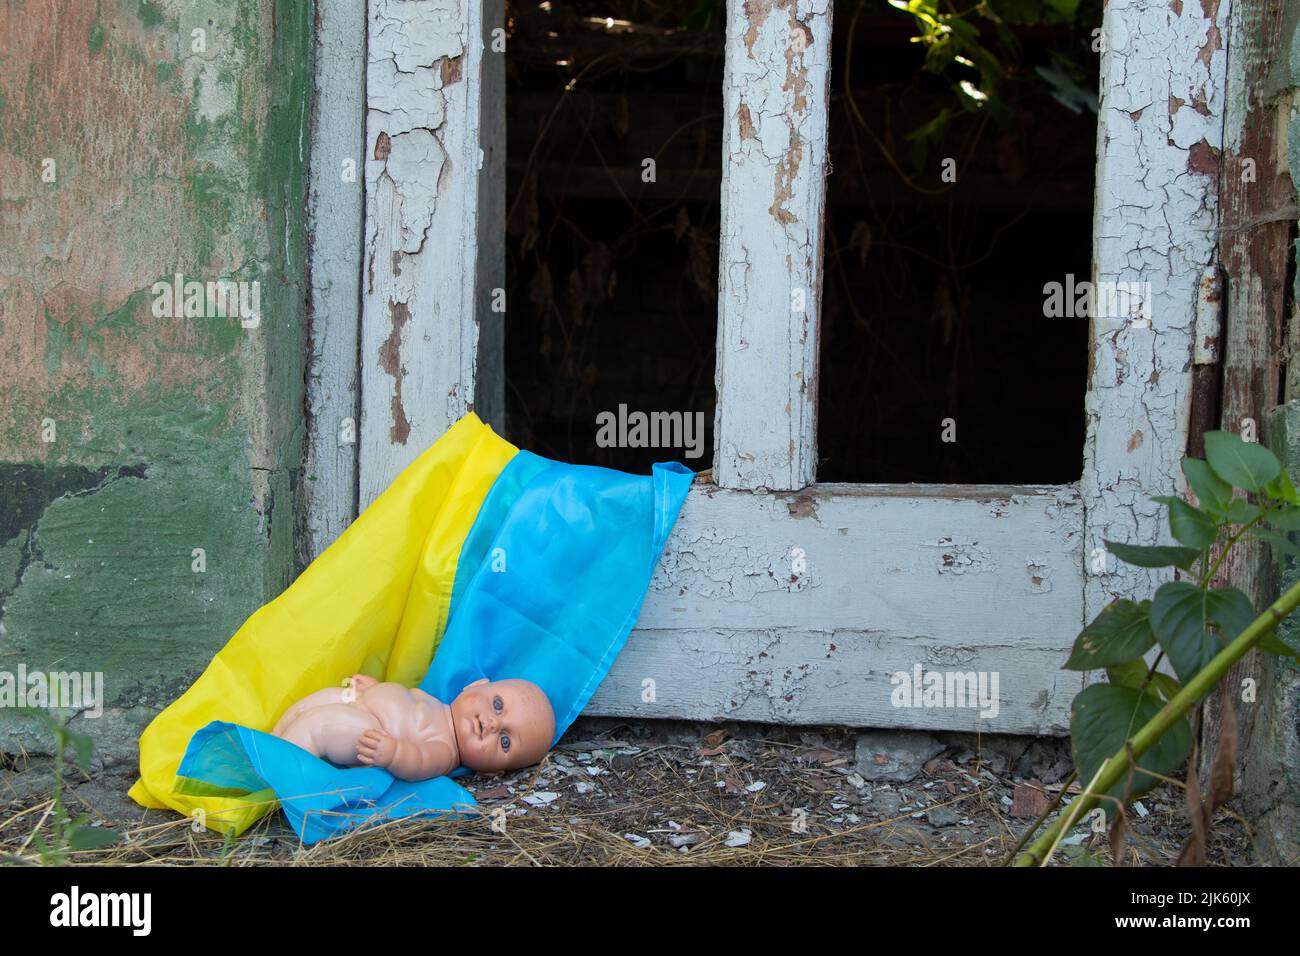 Une poupée d'enfants se trouve sur les drapeaux de l'Ukraine dans une maison à explosion de missiles, la guerre en Ukraine, la mort d'enfants de missiles russes Banque D'Images